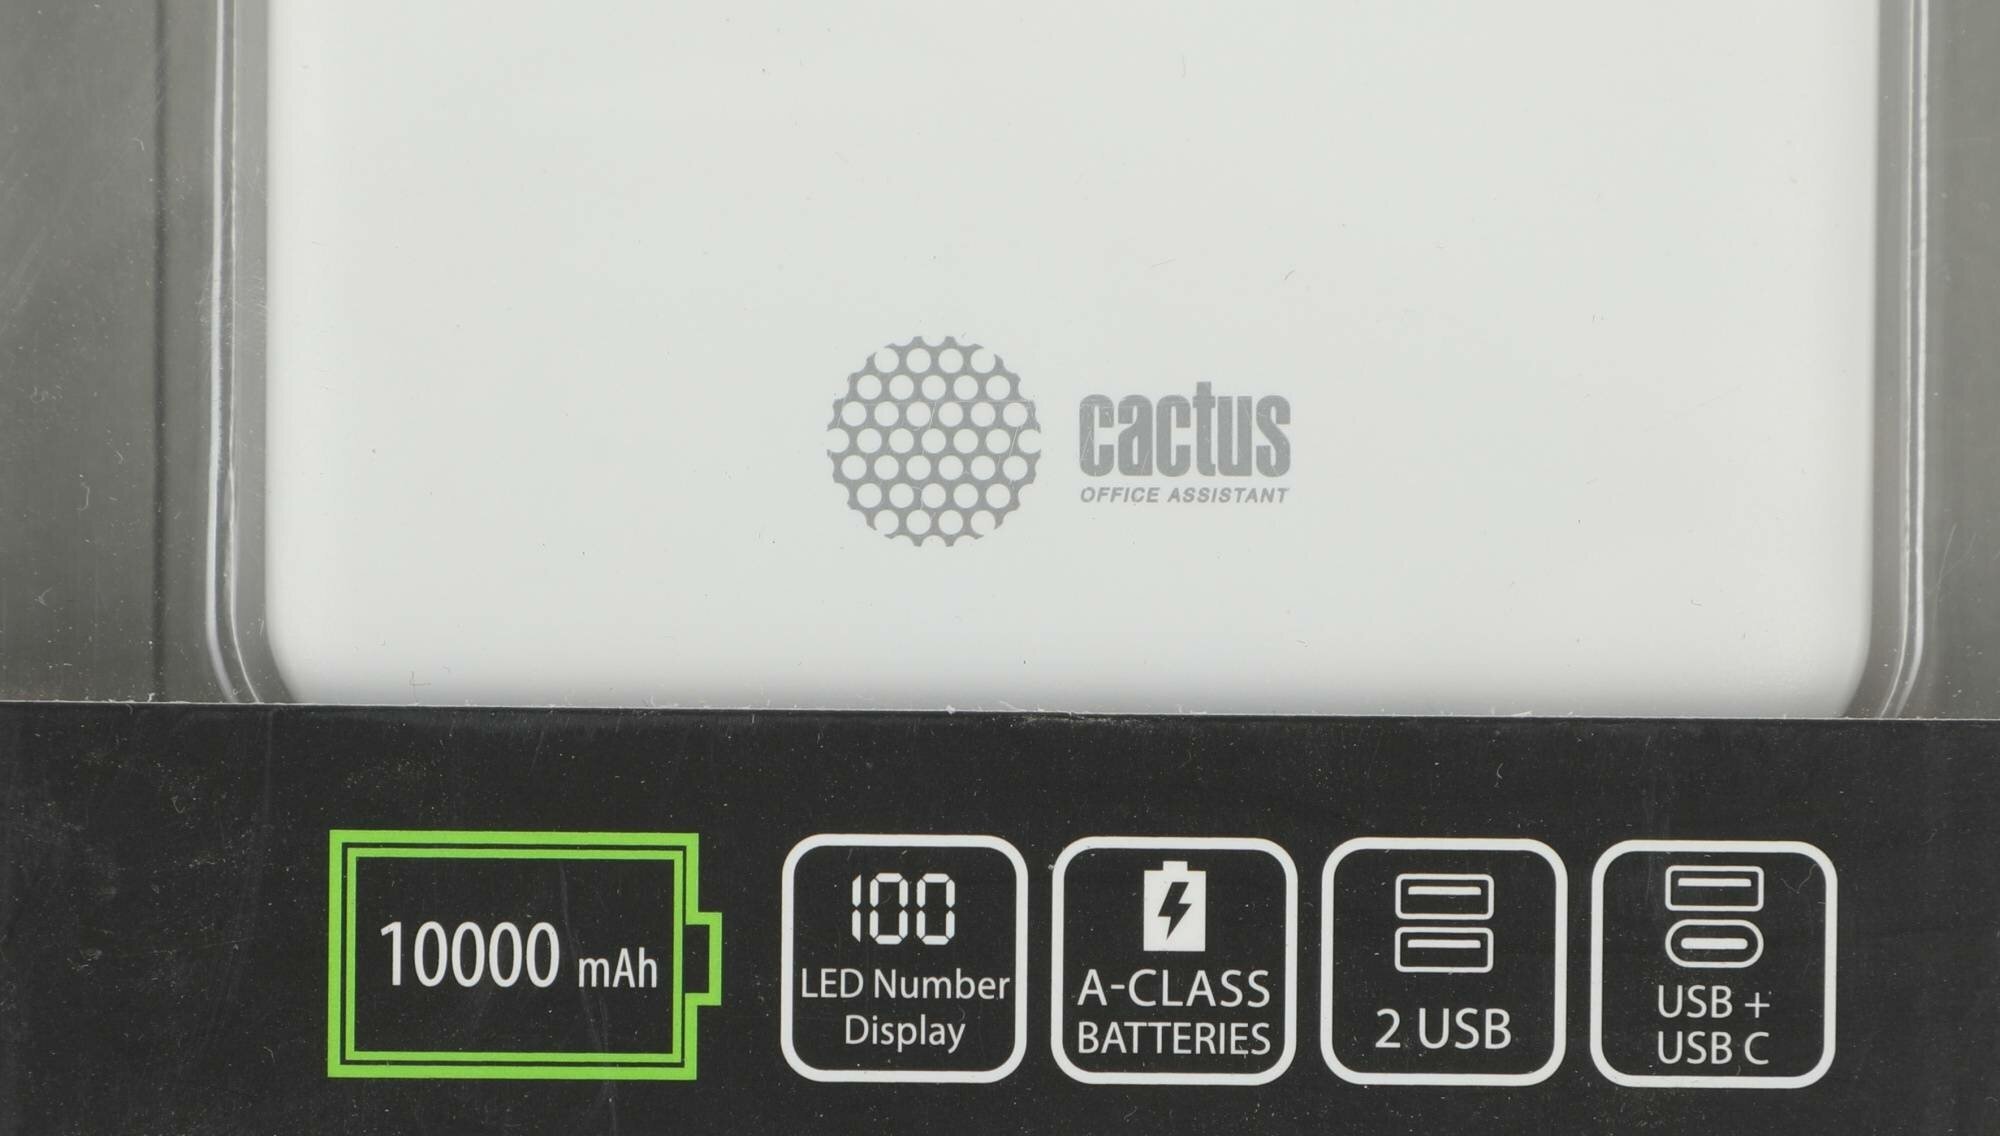 Аккумулятор внешний универсальный Cactus PowerBank CS-PBFSKT-10000 Li-Pol 10000mAh 21A+21A белый 2xUSB материал пластик